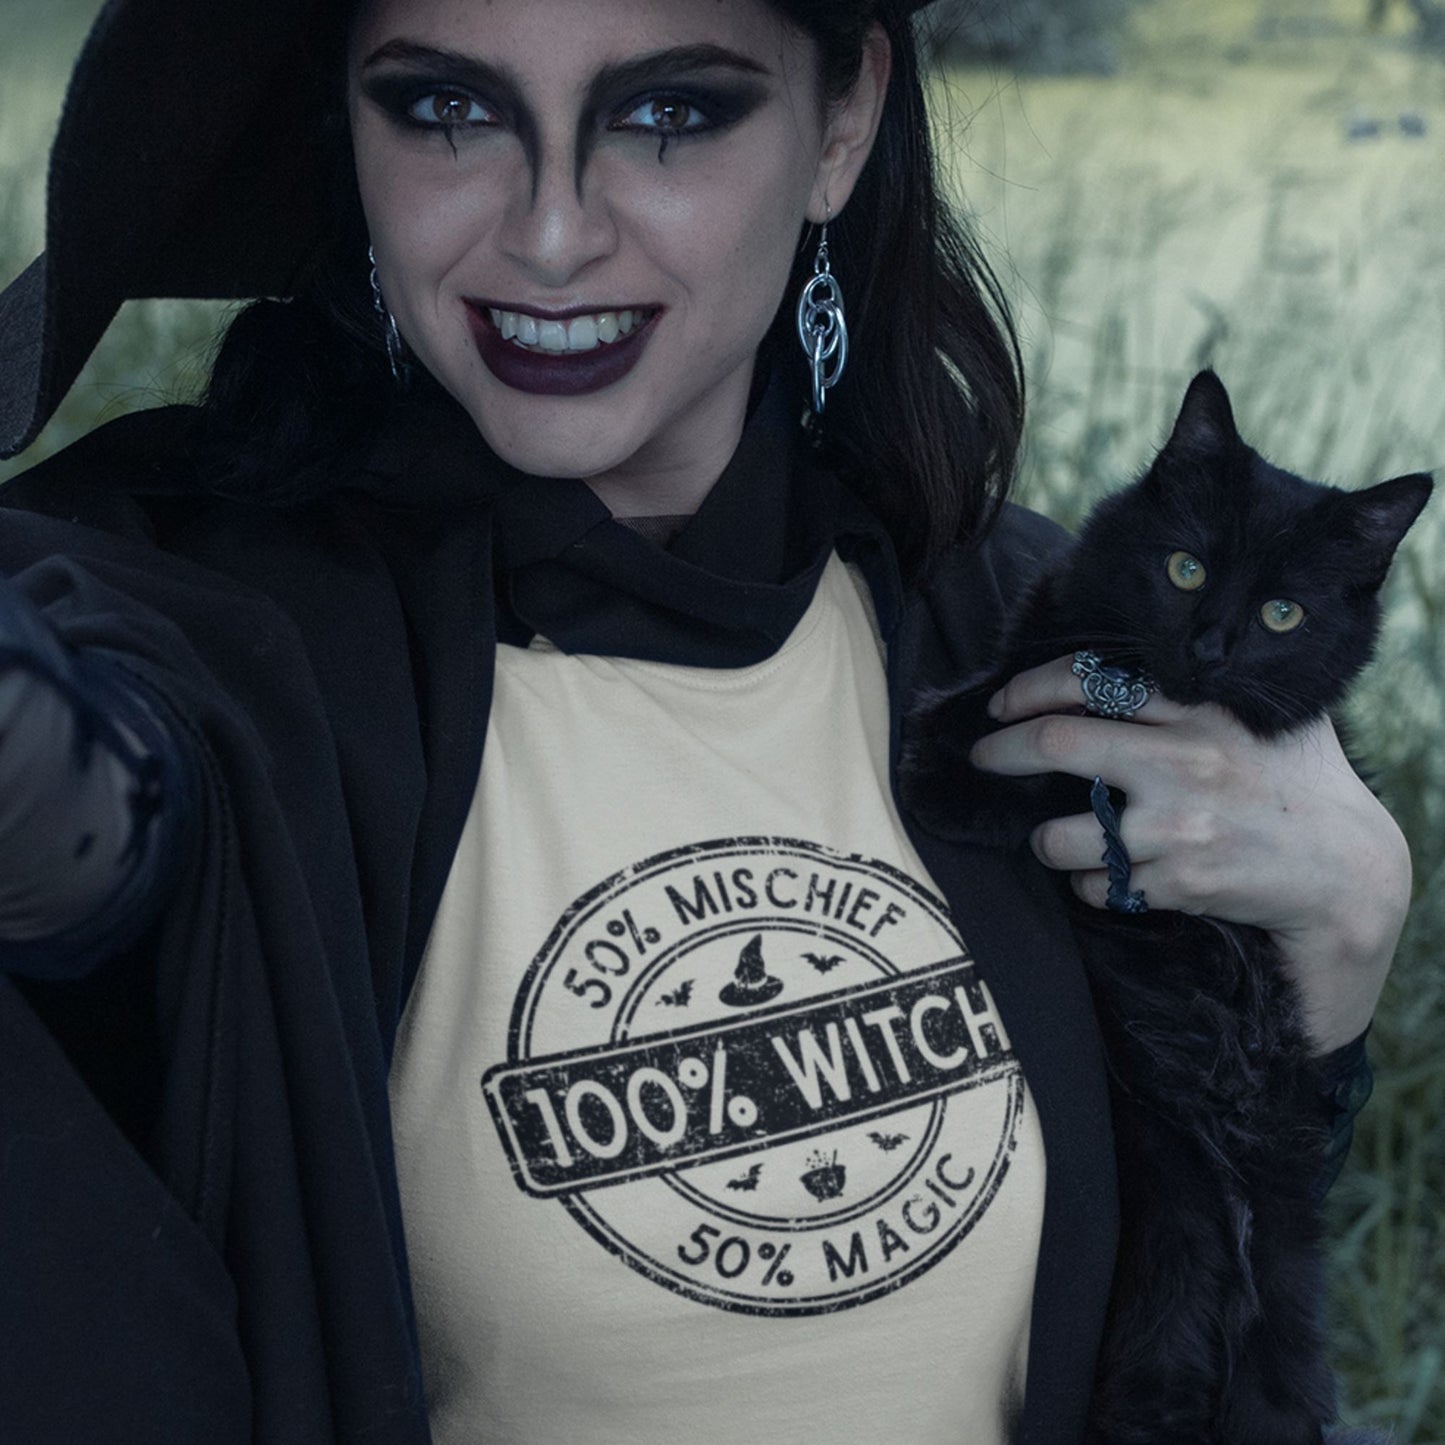 100% Witch Women's Halloween T-shirt T-shirt teelaunch 